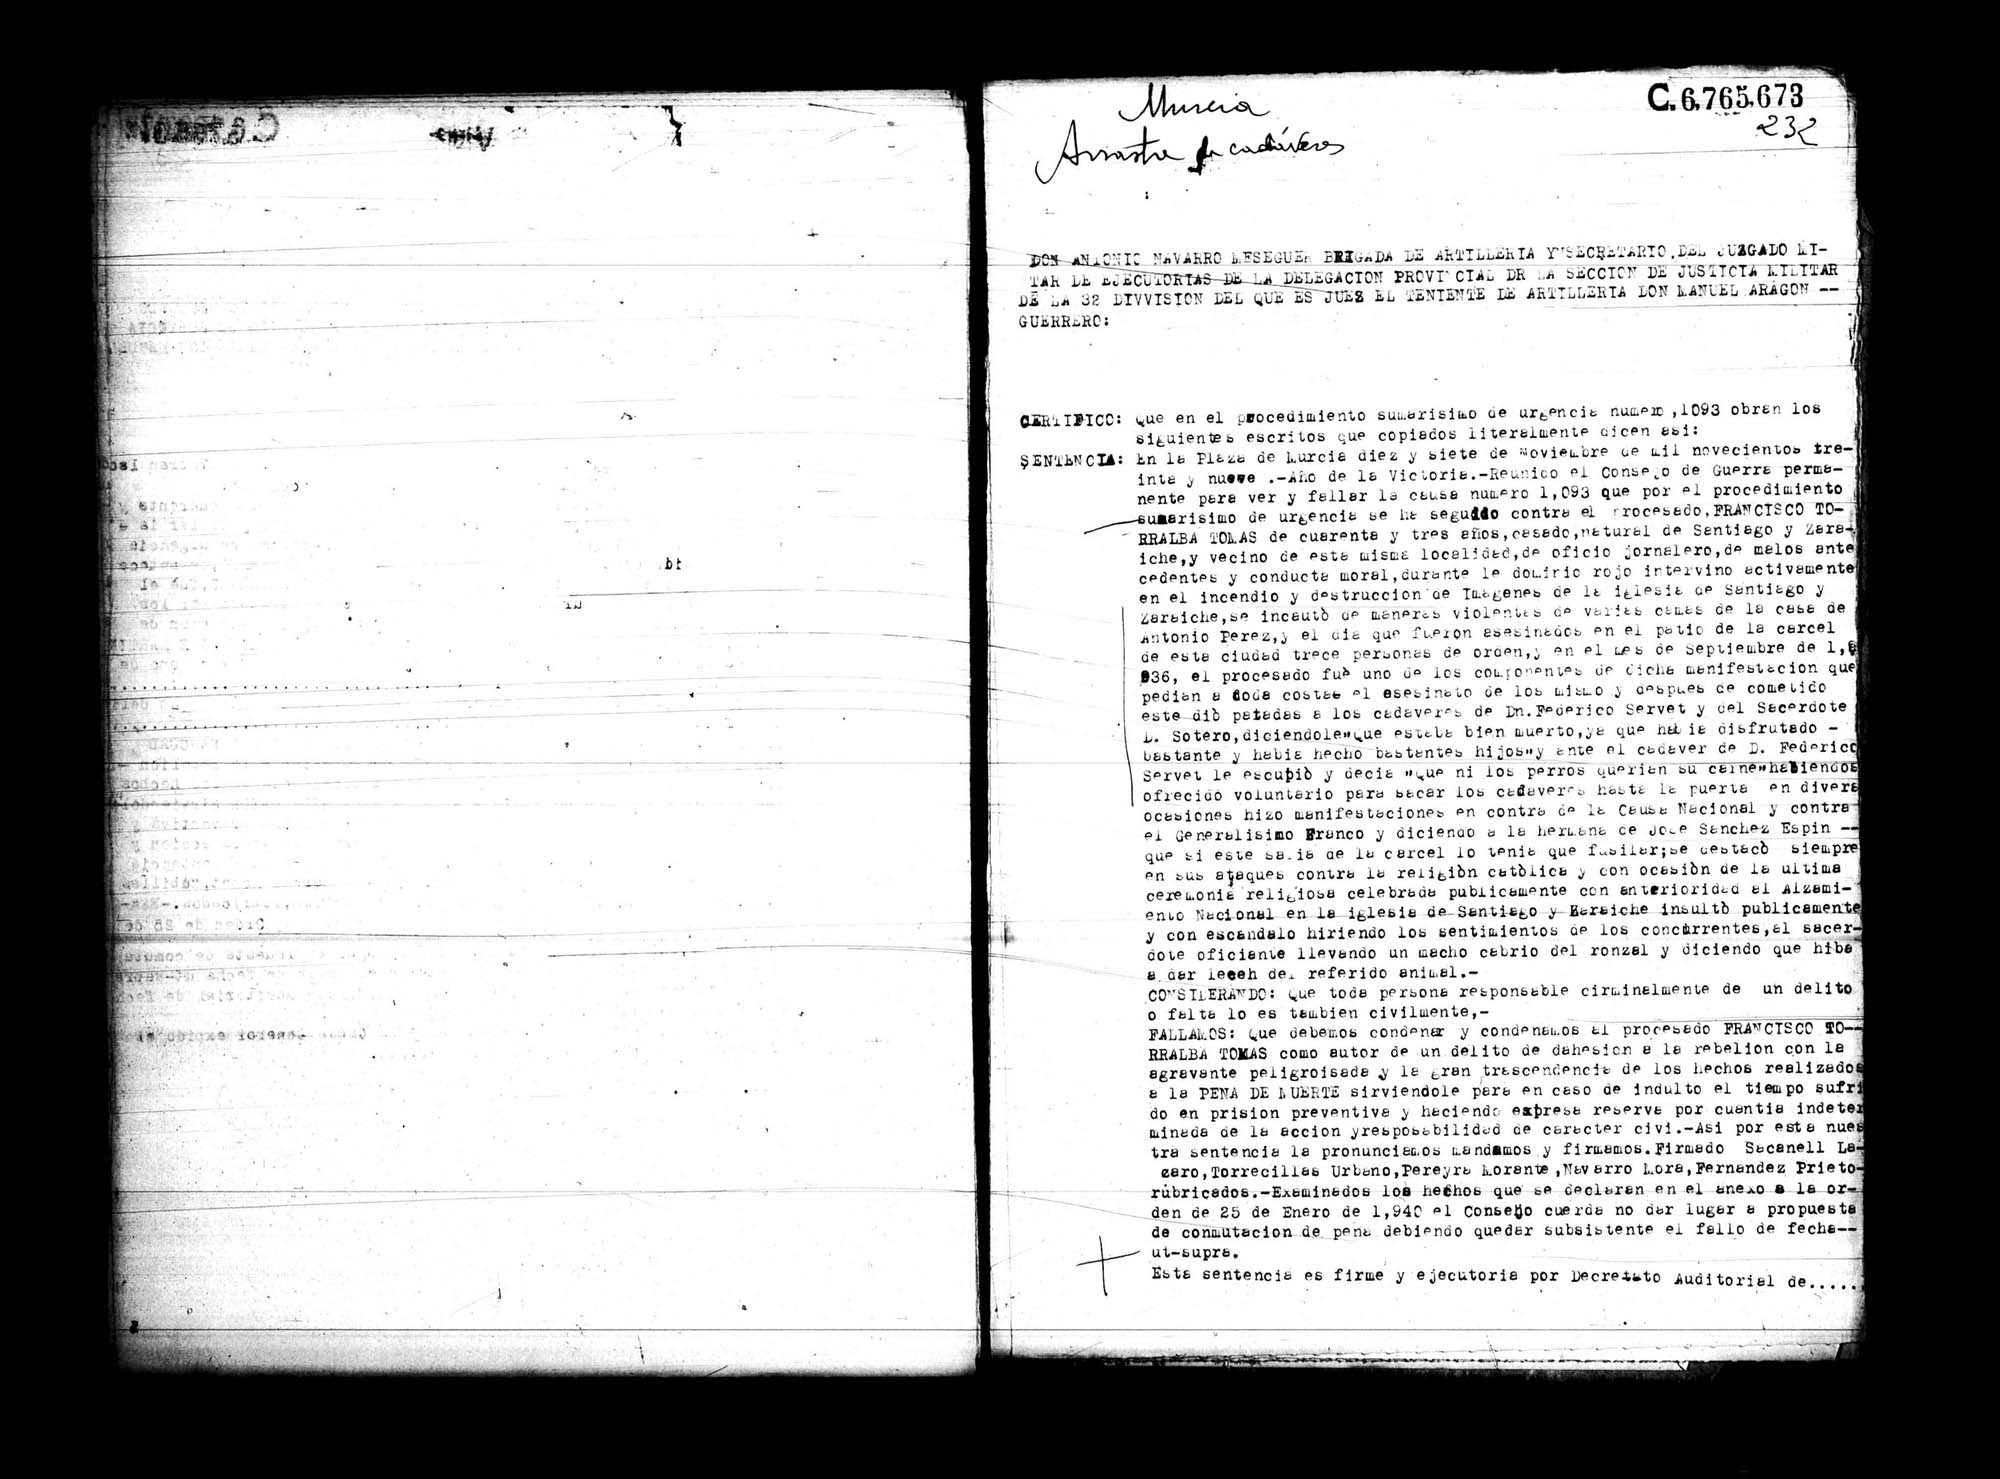 Certificado de la sentencia pronunciada contra Francisco Torralba Tomás, natural de Santiago y Zaraiche, causa 1093, el 17 de noviembre de 1939 en Murcia.